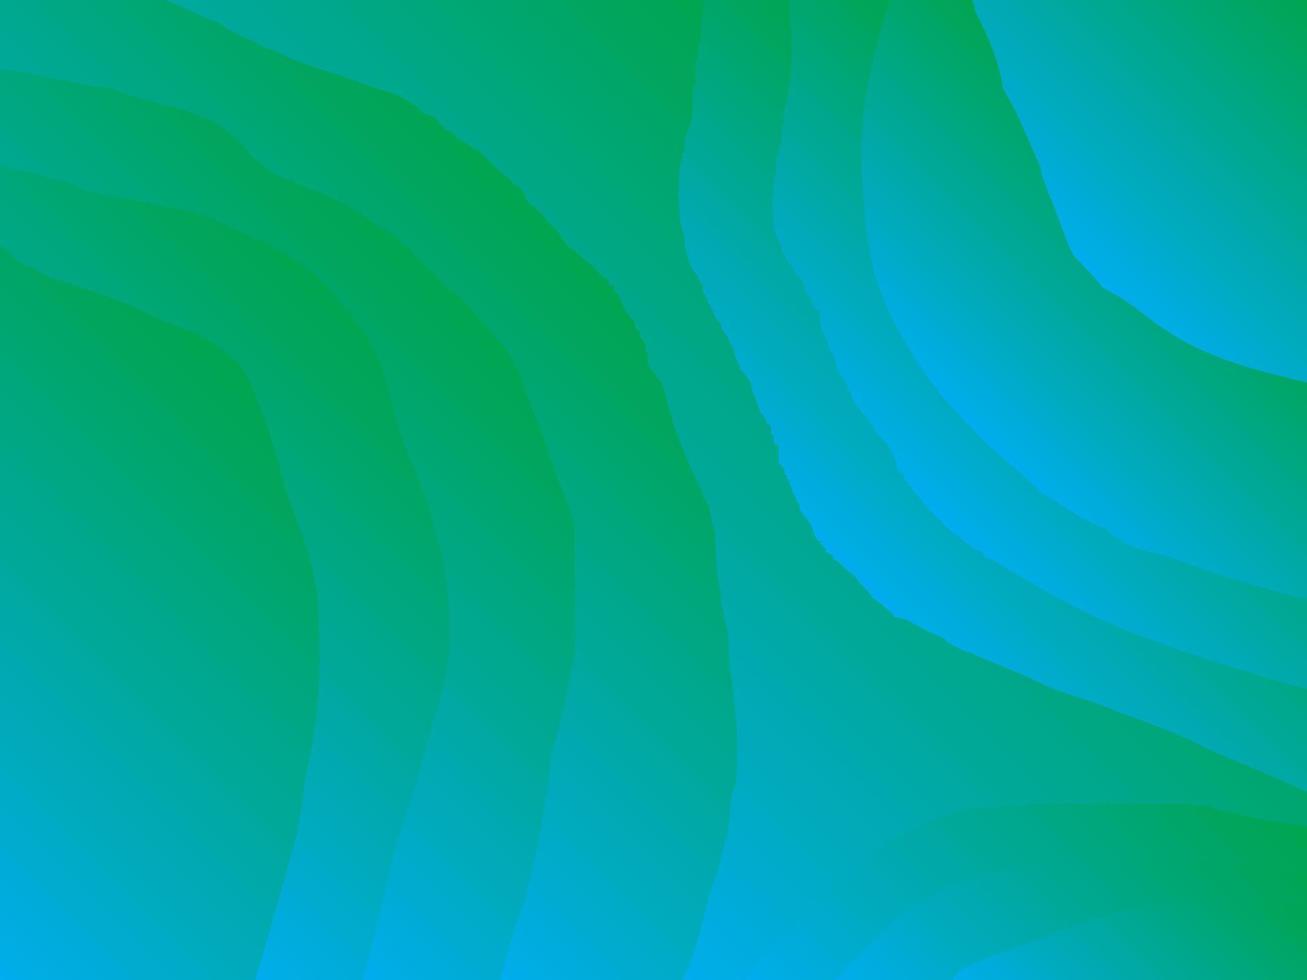 blaue und grüne abstrakte Gradientenvektor-Hintergrundillustrationen für Tapeten, Druck, Dekoration und vieles mehr vektor